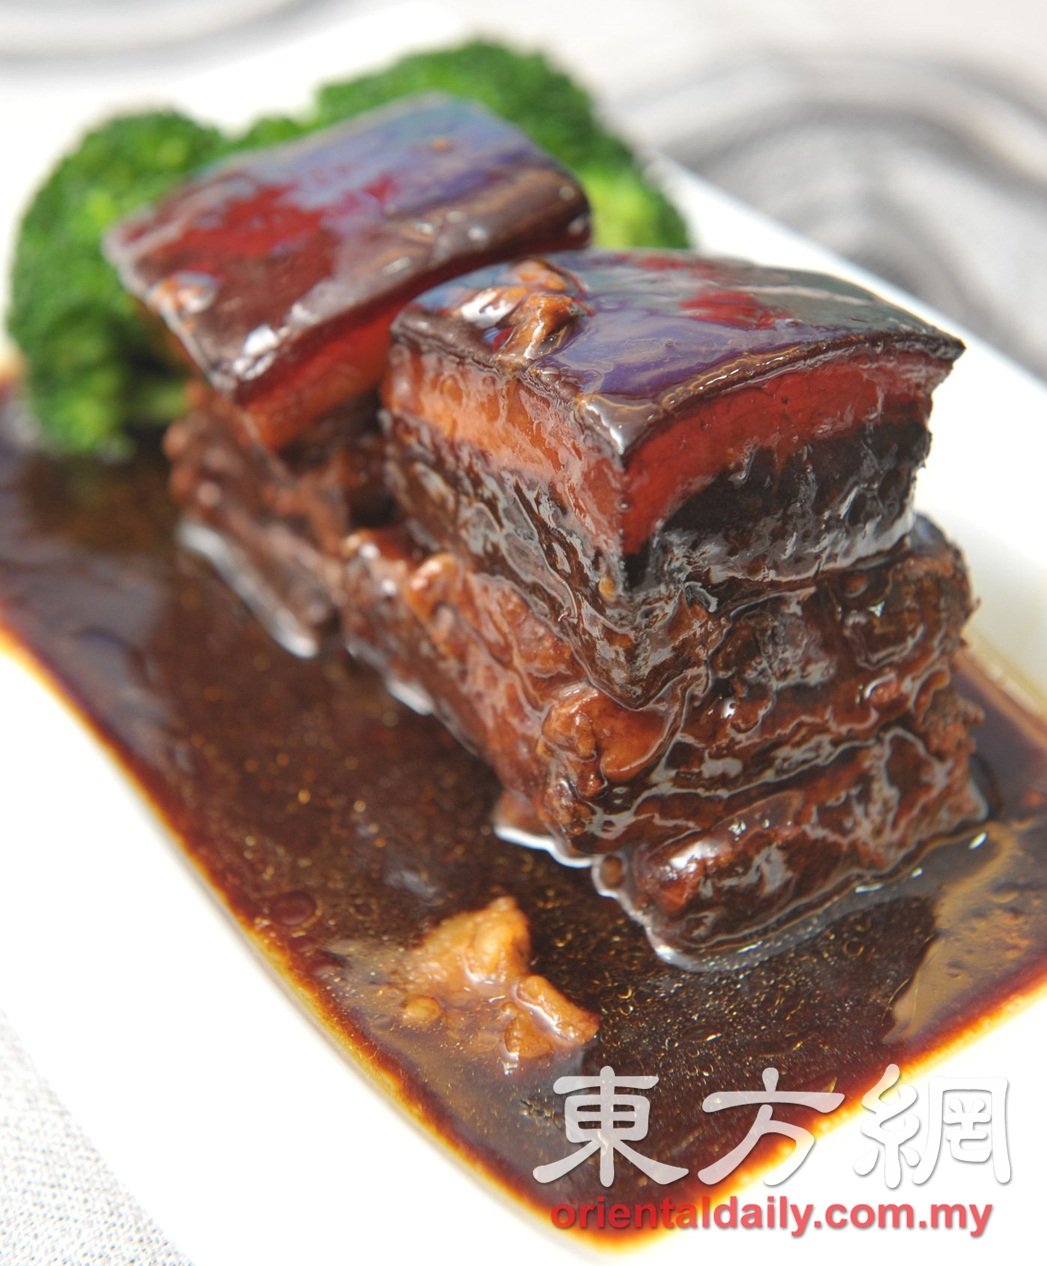 东坡肉是上海菜，但是陈宝发却花心思研究，让味道更上一层楼，带甜味的肉汁，味道一流，不妨一试。